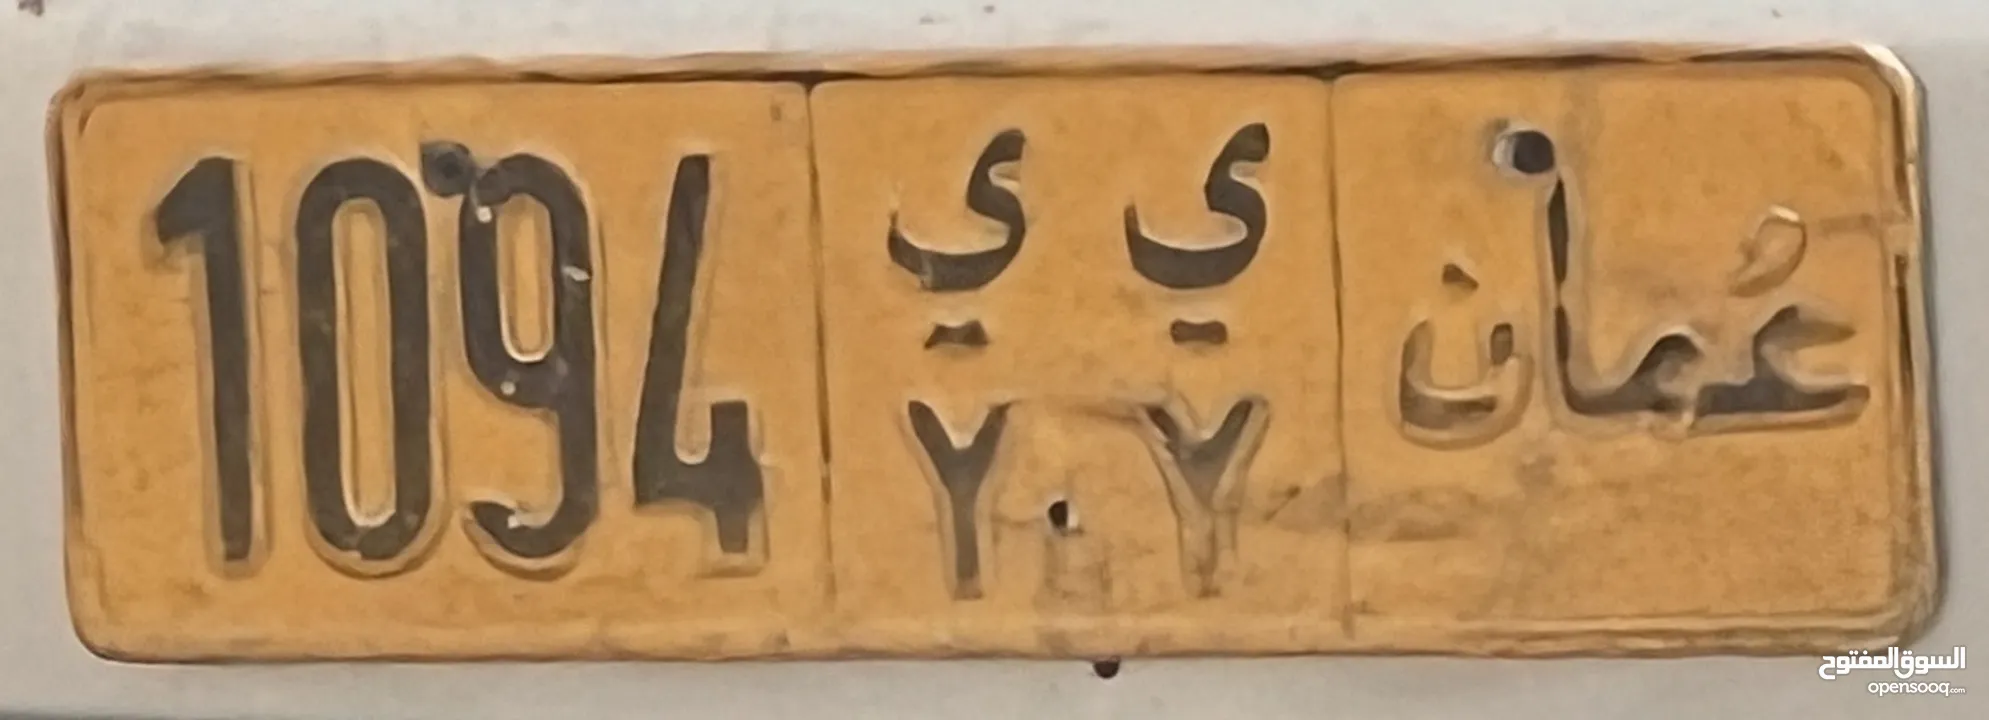 لوحه رباعي رمز مميز 1094 ي ي y y